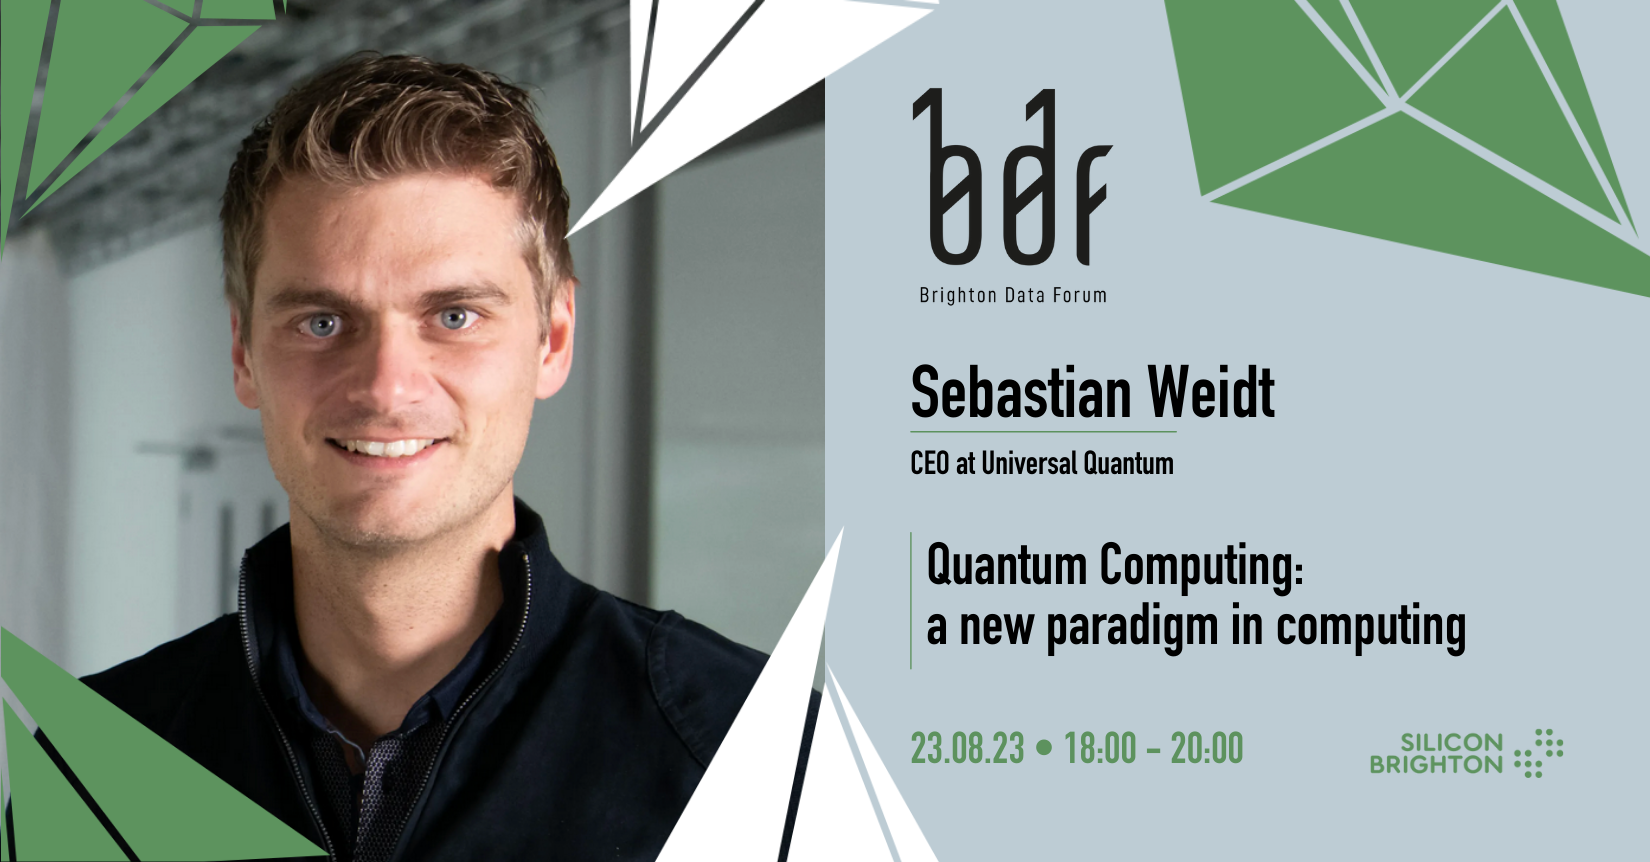 Brighton Data Forum: Quantum Computing - a new paradigm in computing